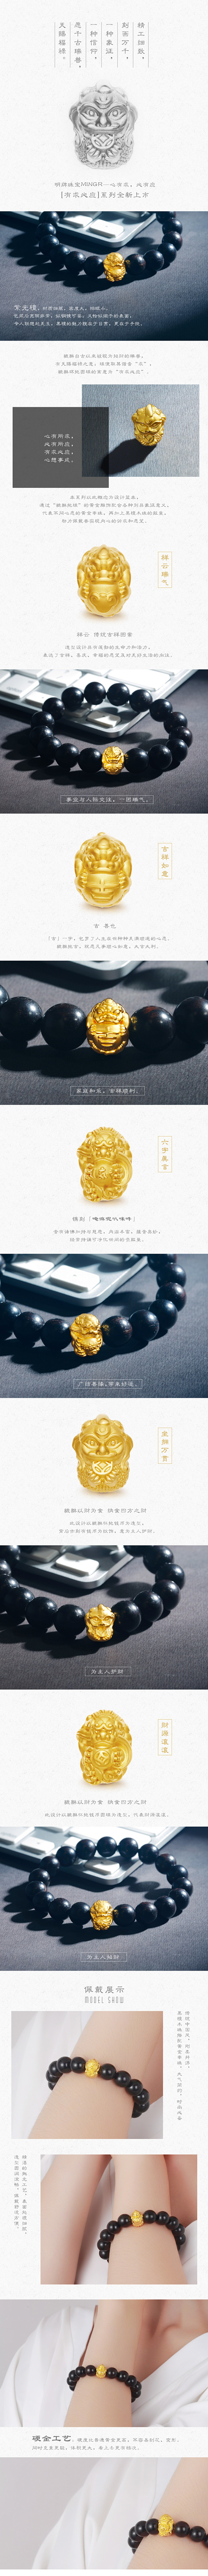 明牌珠宝黄金貔貅手链详情页